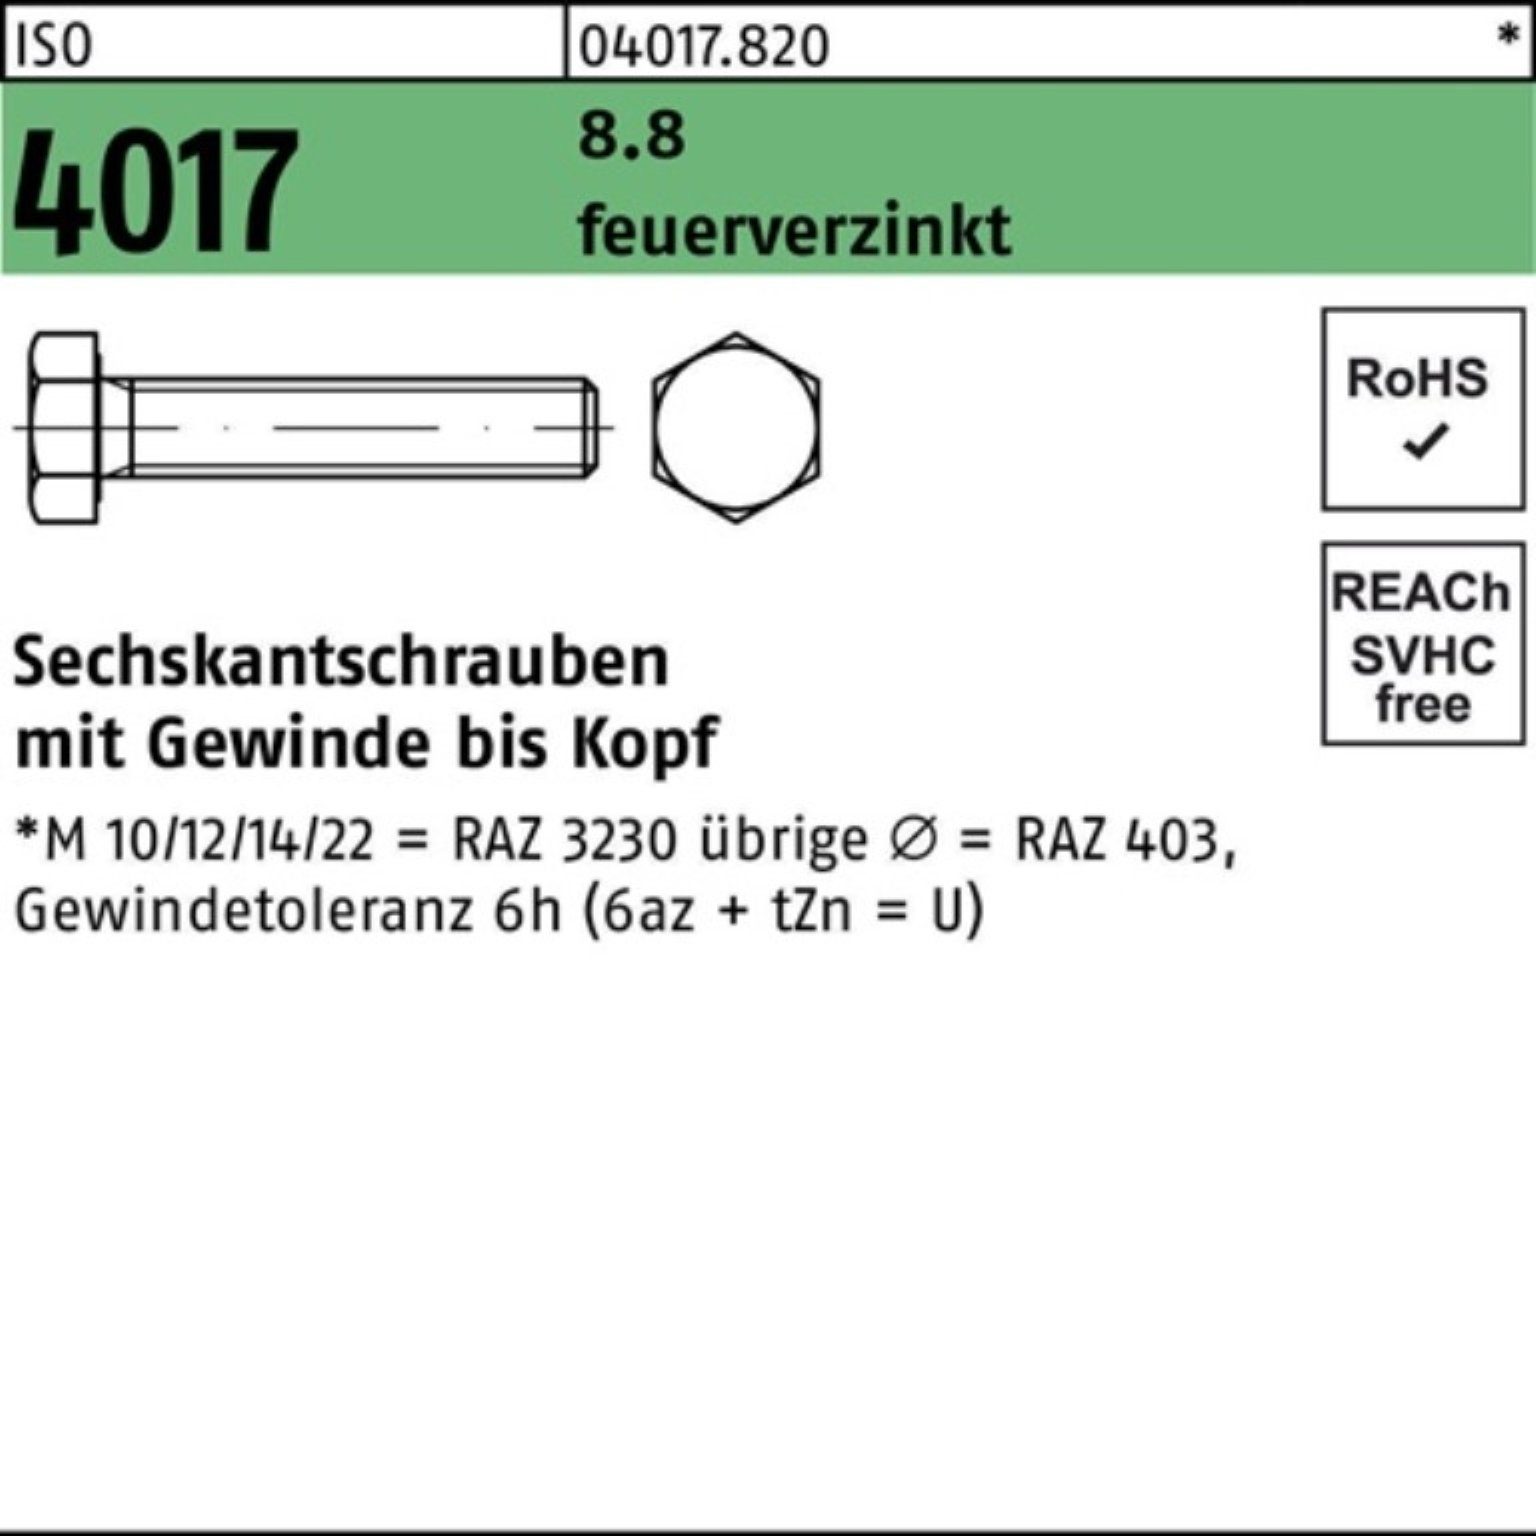 Bufab Sechskantschraube 100er Pack ISO 8.8 M10x St VG feuerverz. 4017 100 60 Sechskantschraube